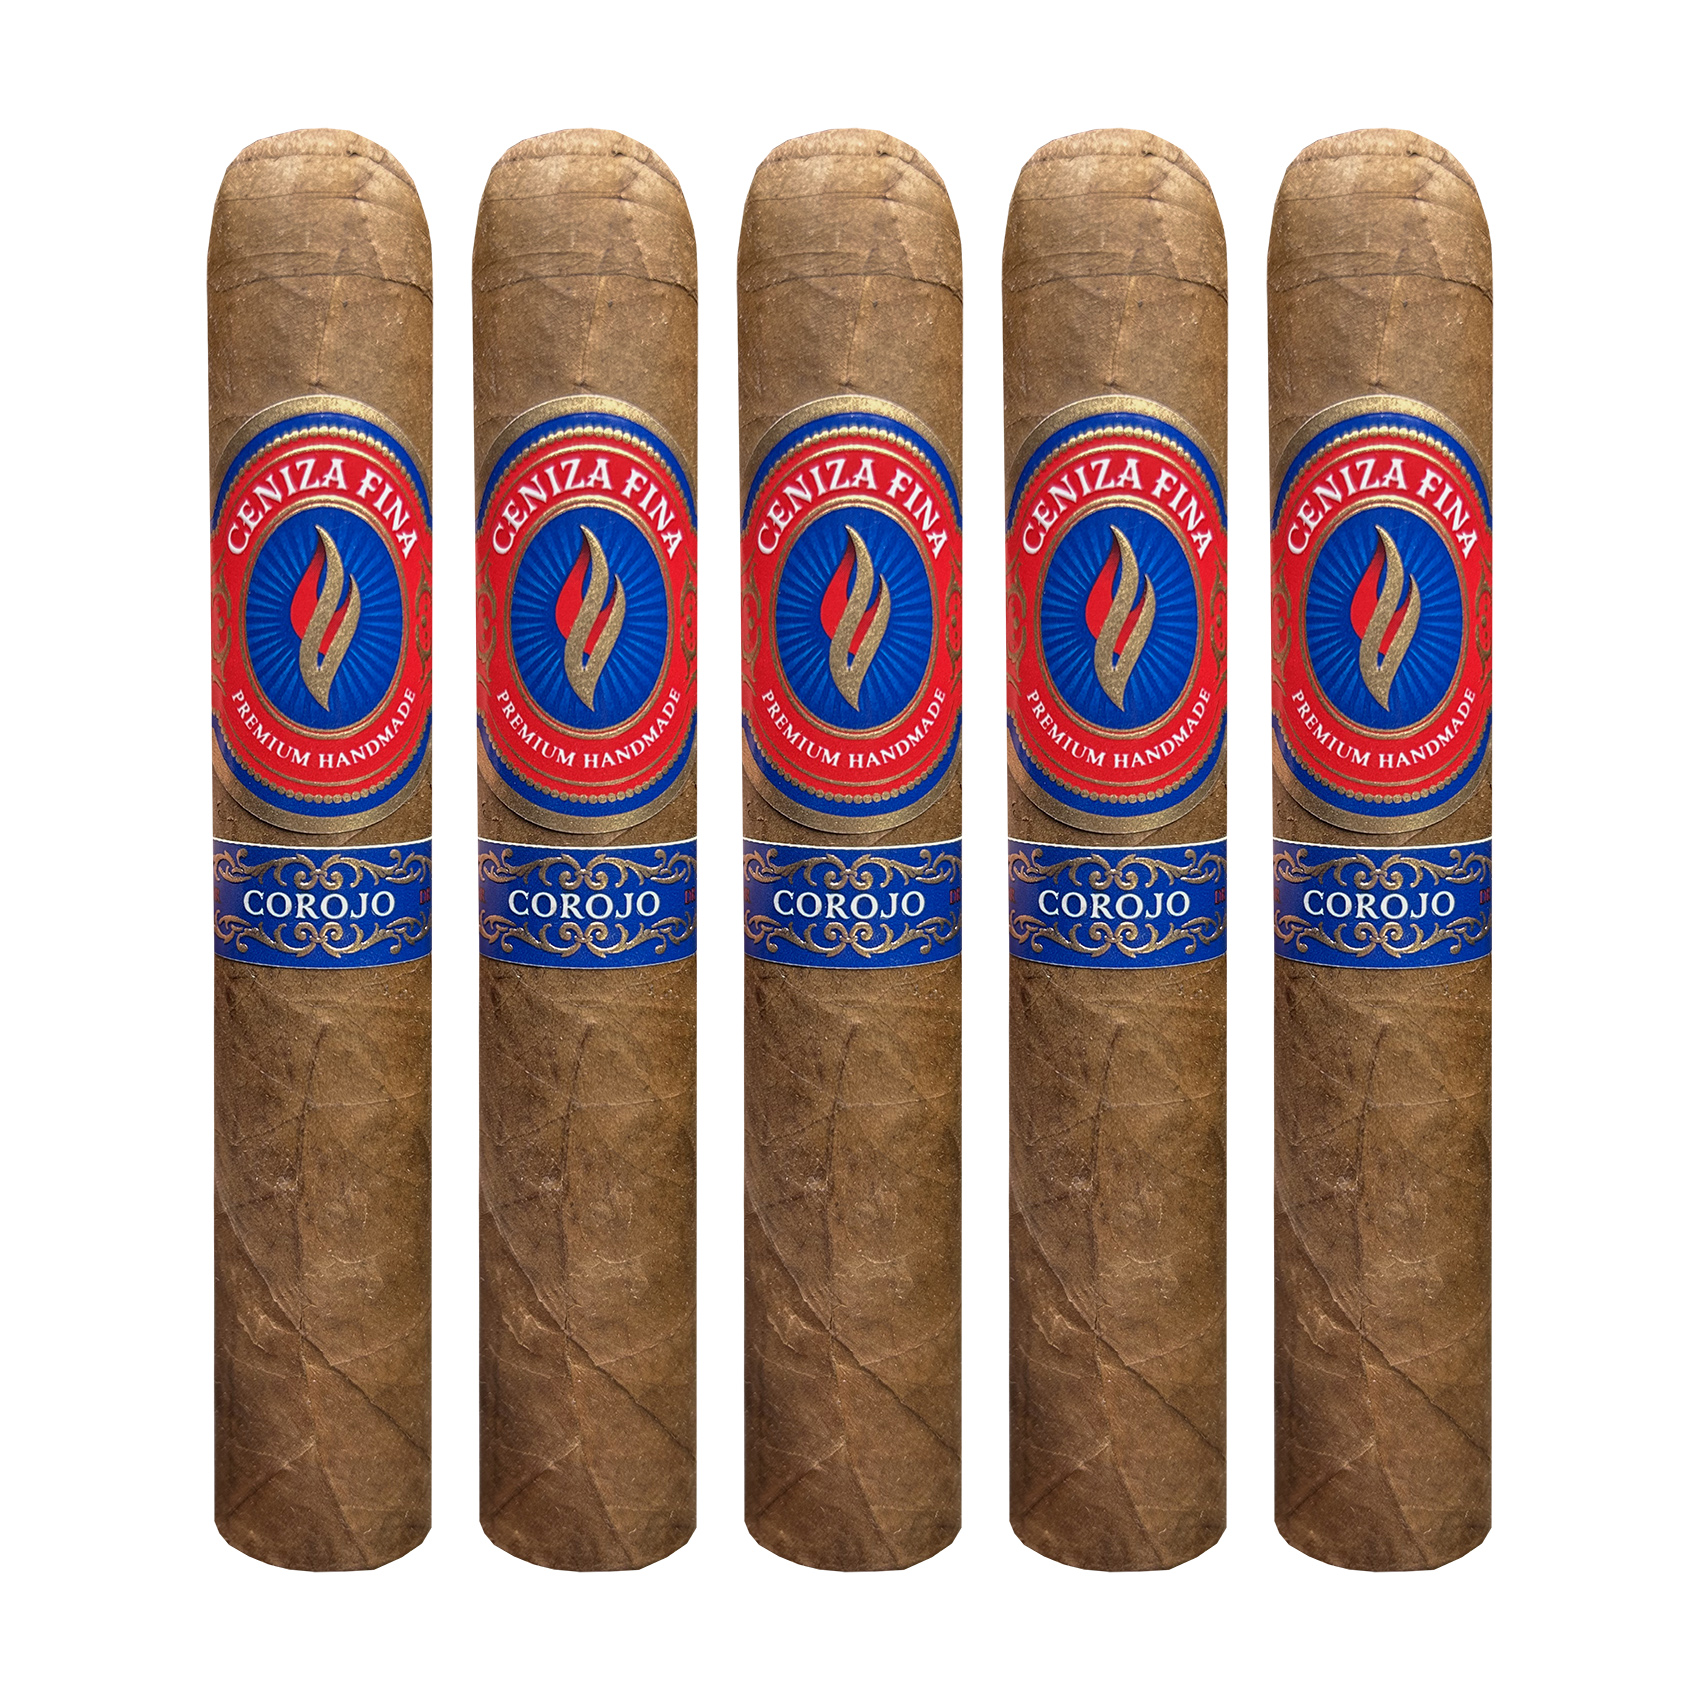 Ceniza Fina Corojo Robusto Cigar - 5 Pack